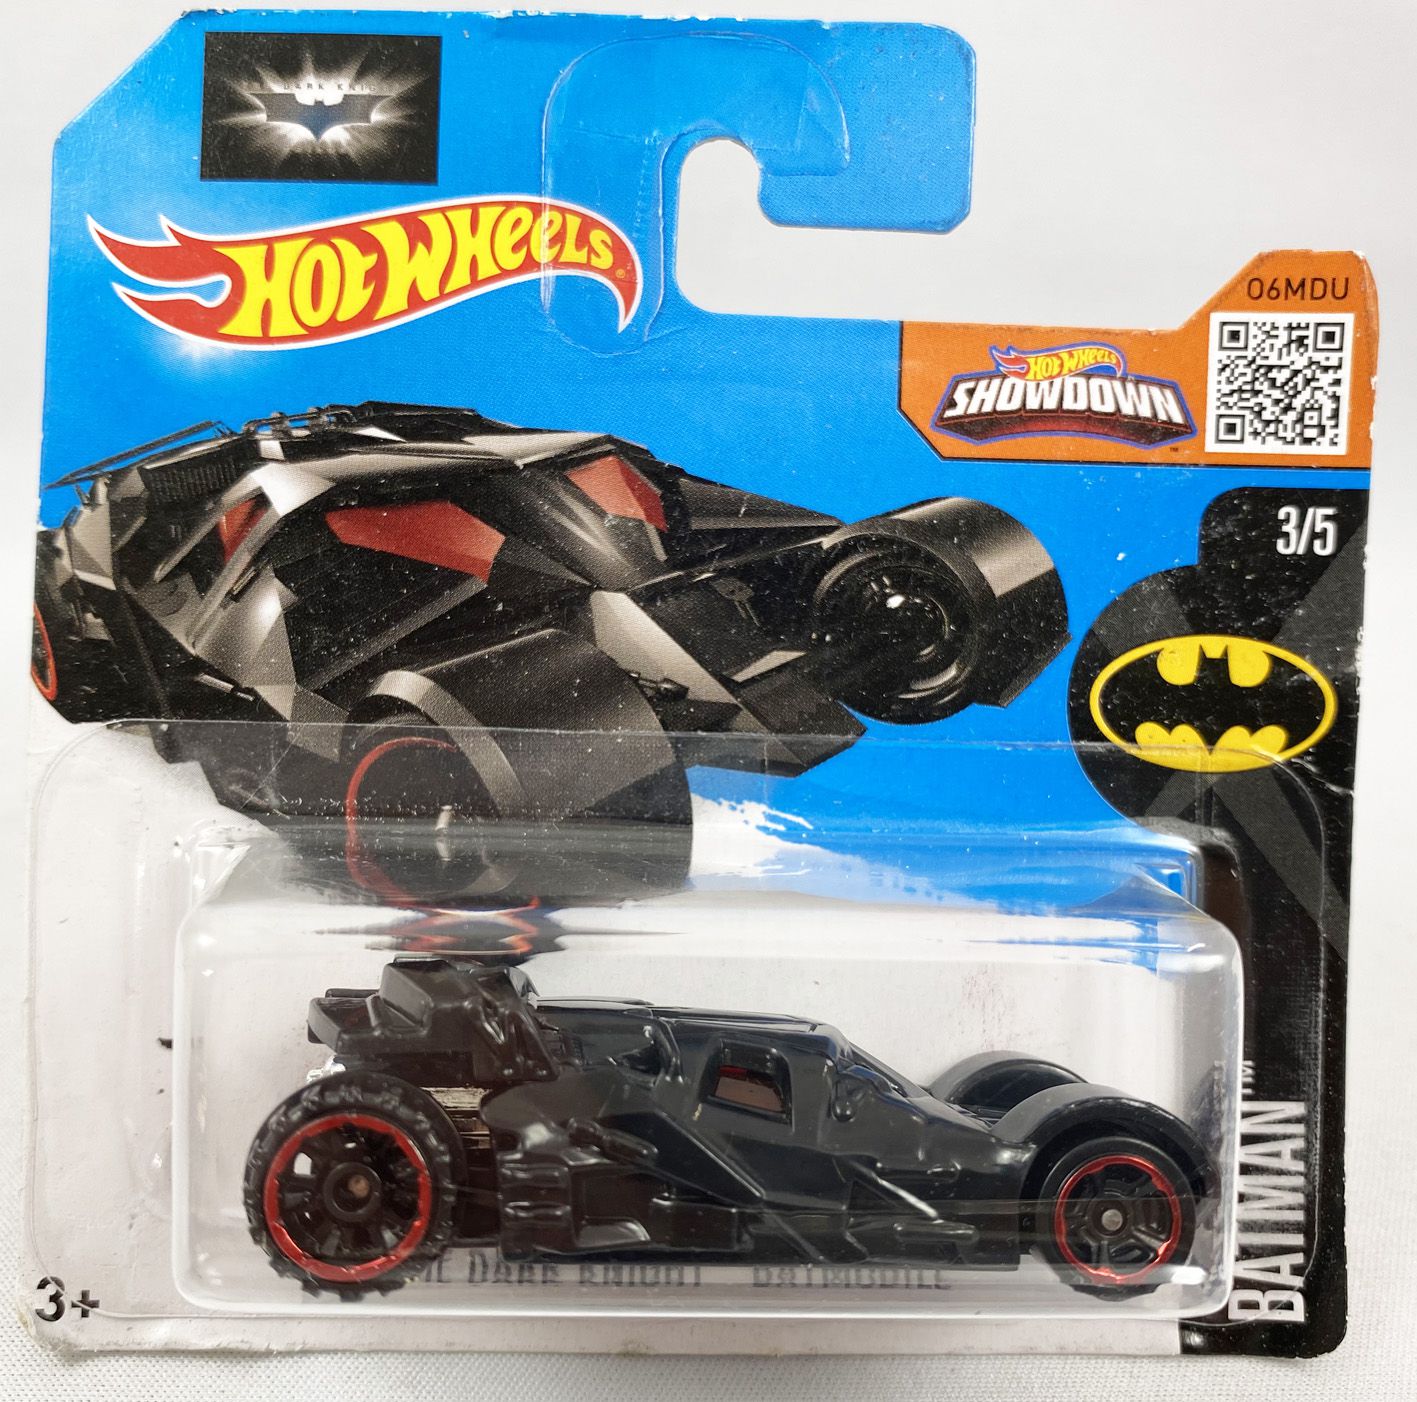 Batman Mattel Hot Wheels Showdown The Dark Knight Batmobile